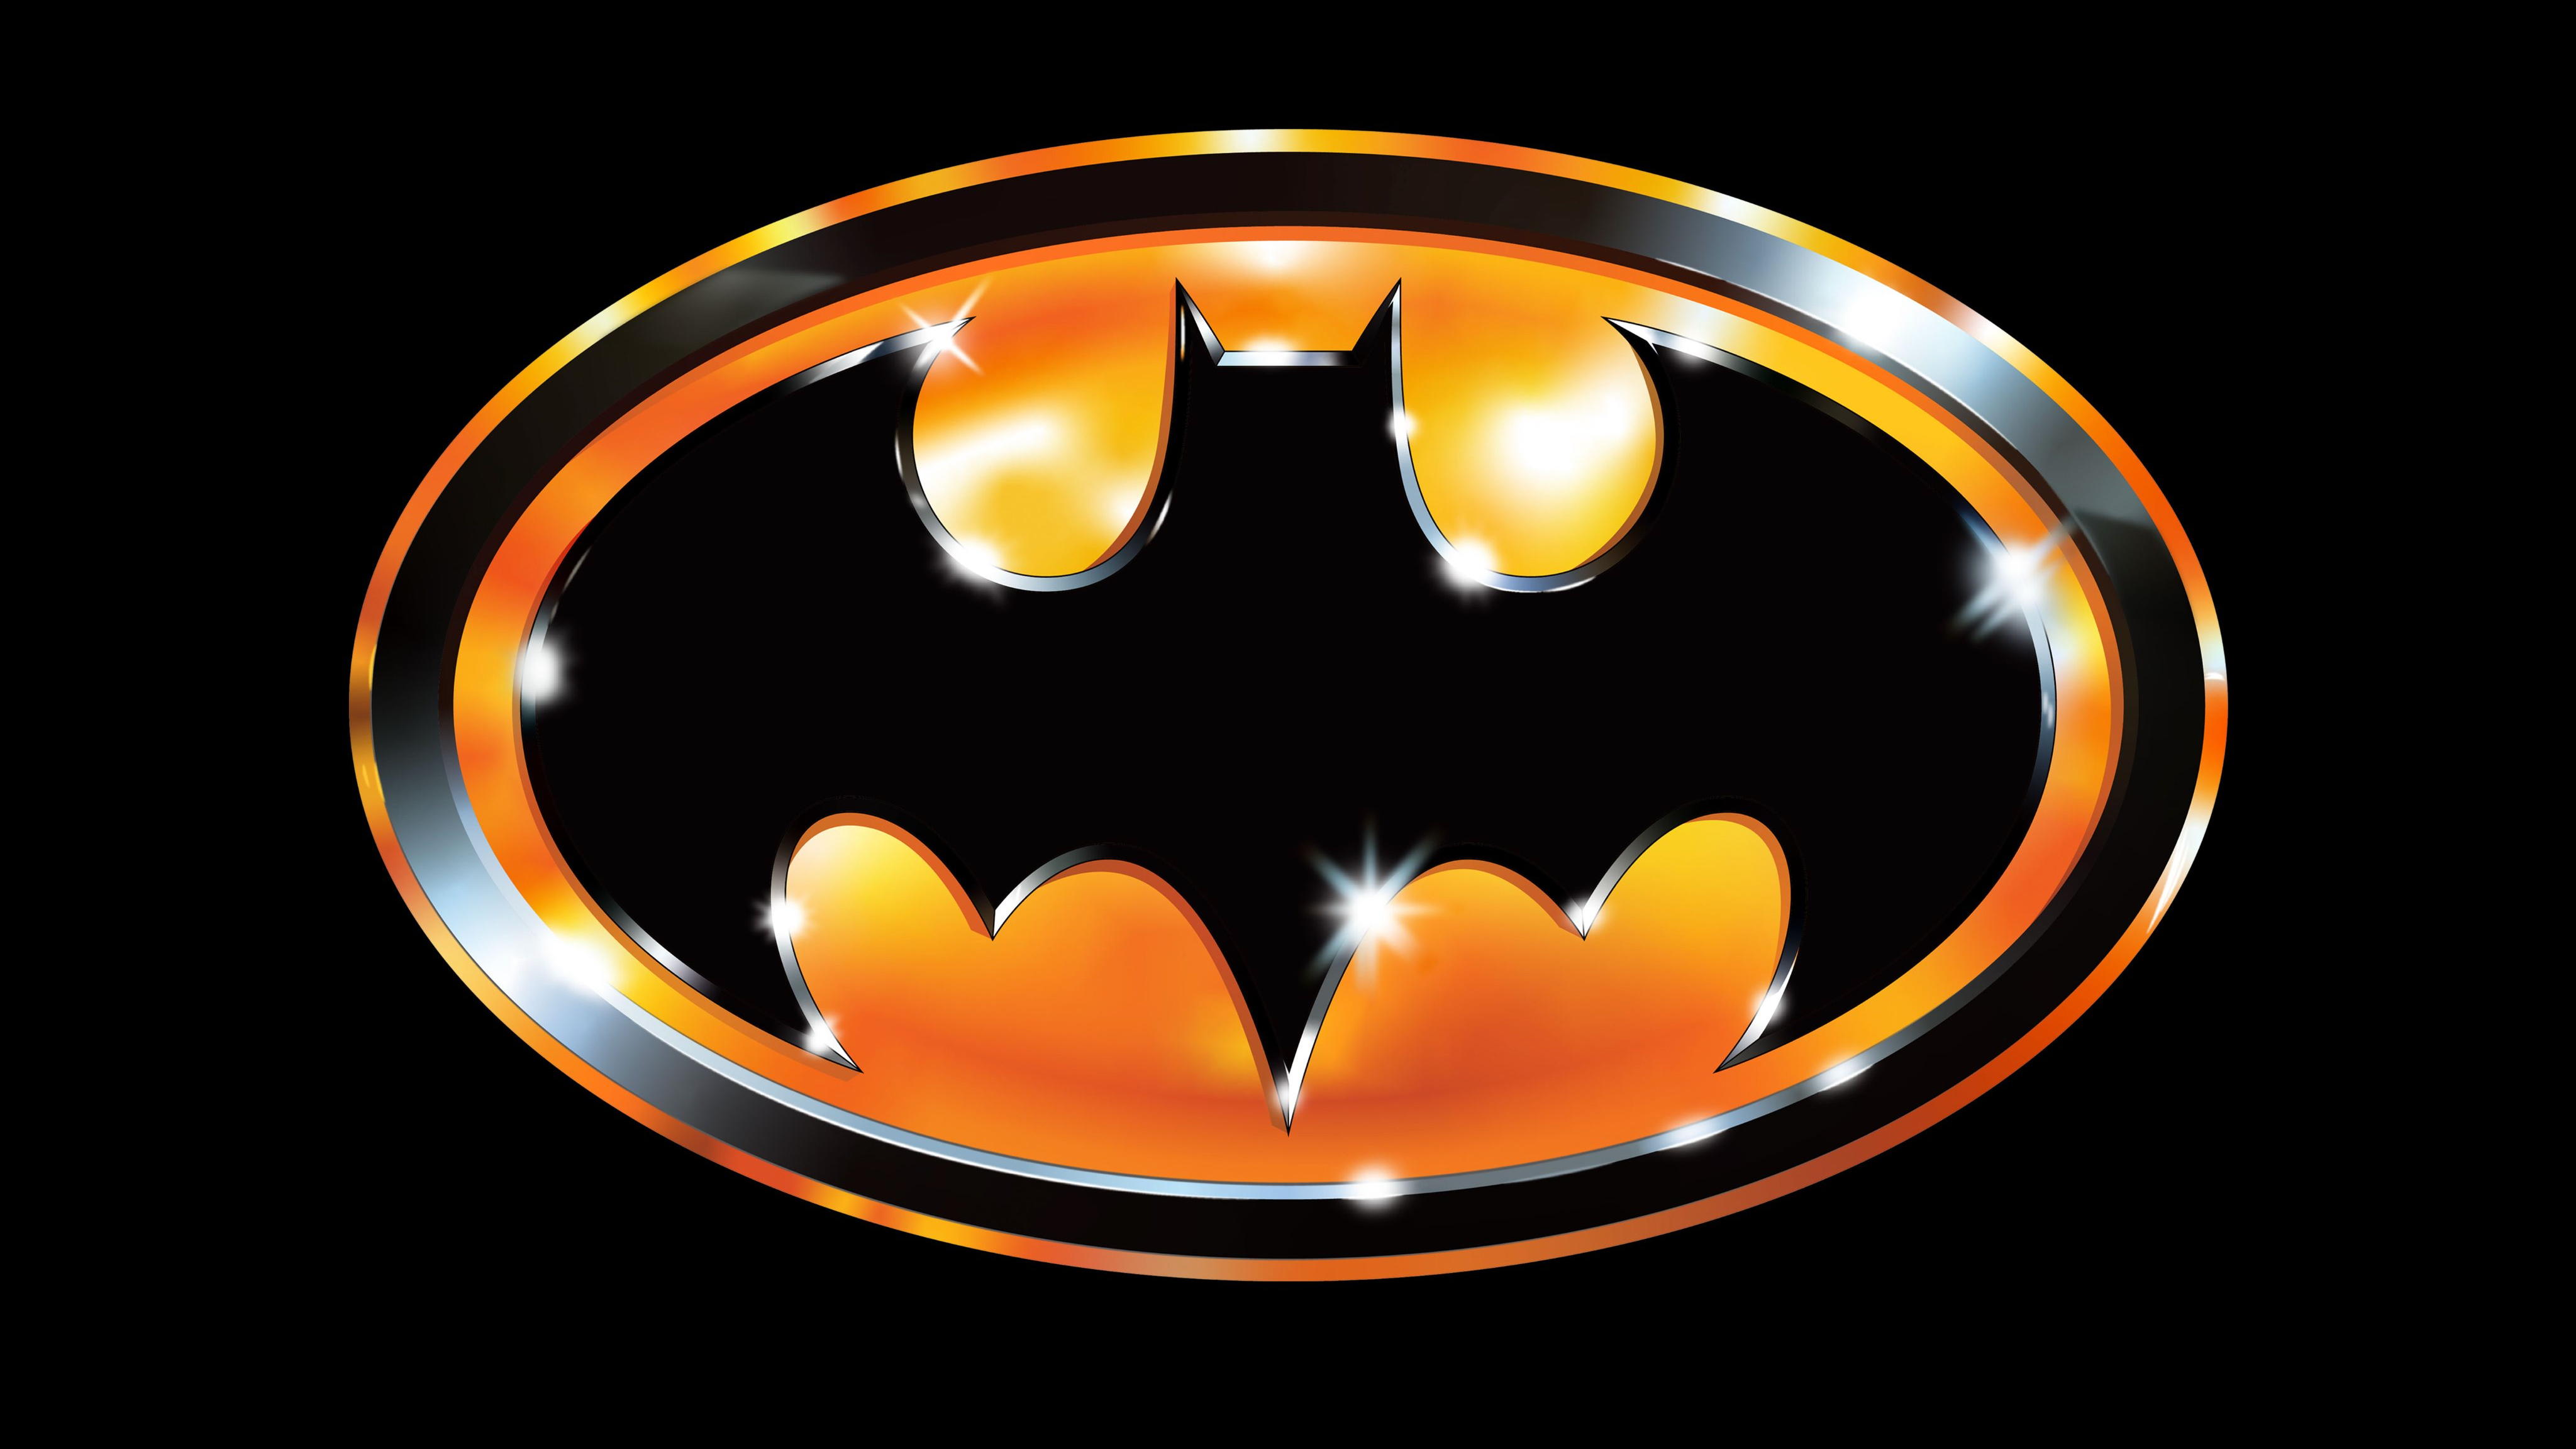 Bat Signal Wallpaper 4K, DC Comics, Graphics CGI